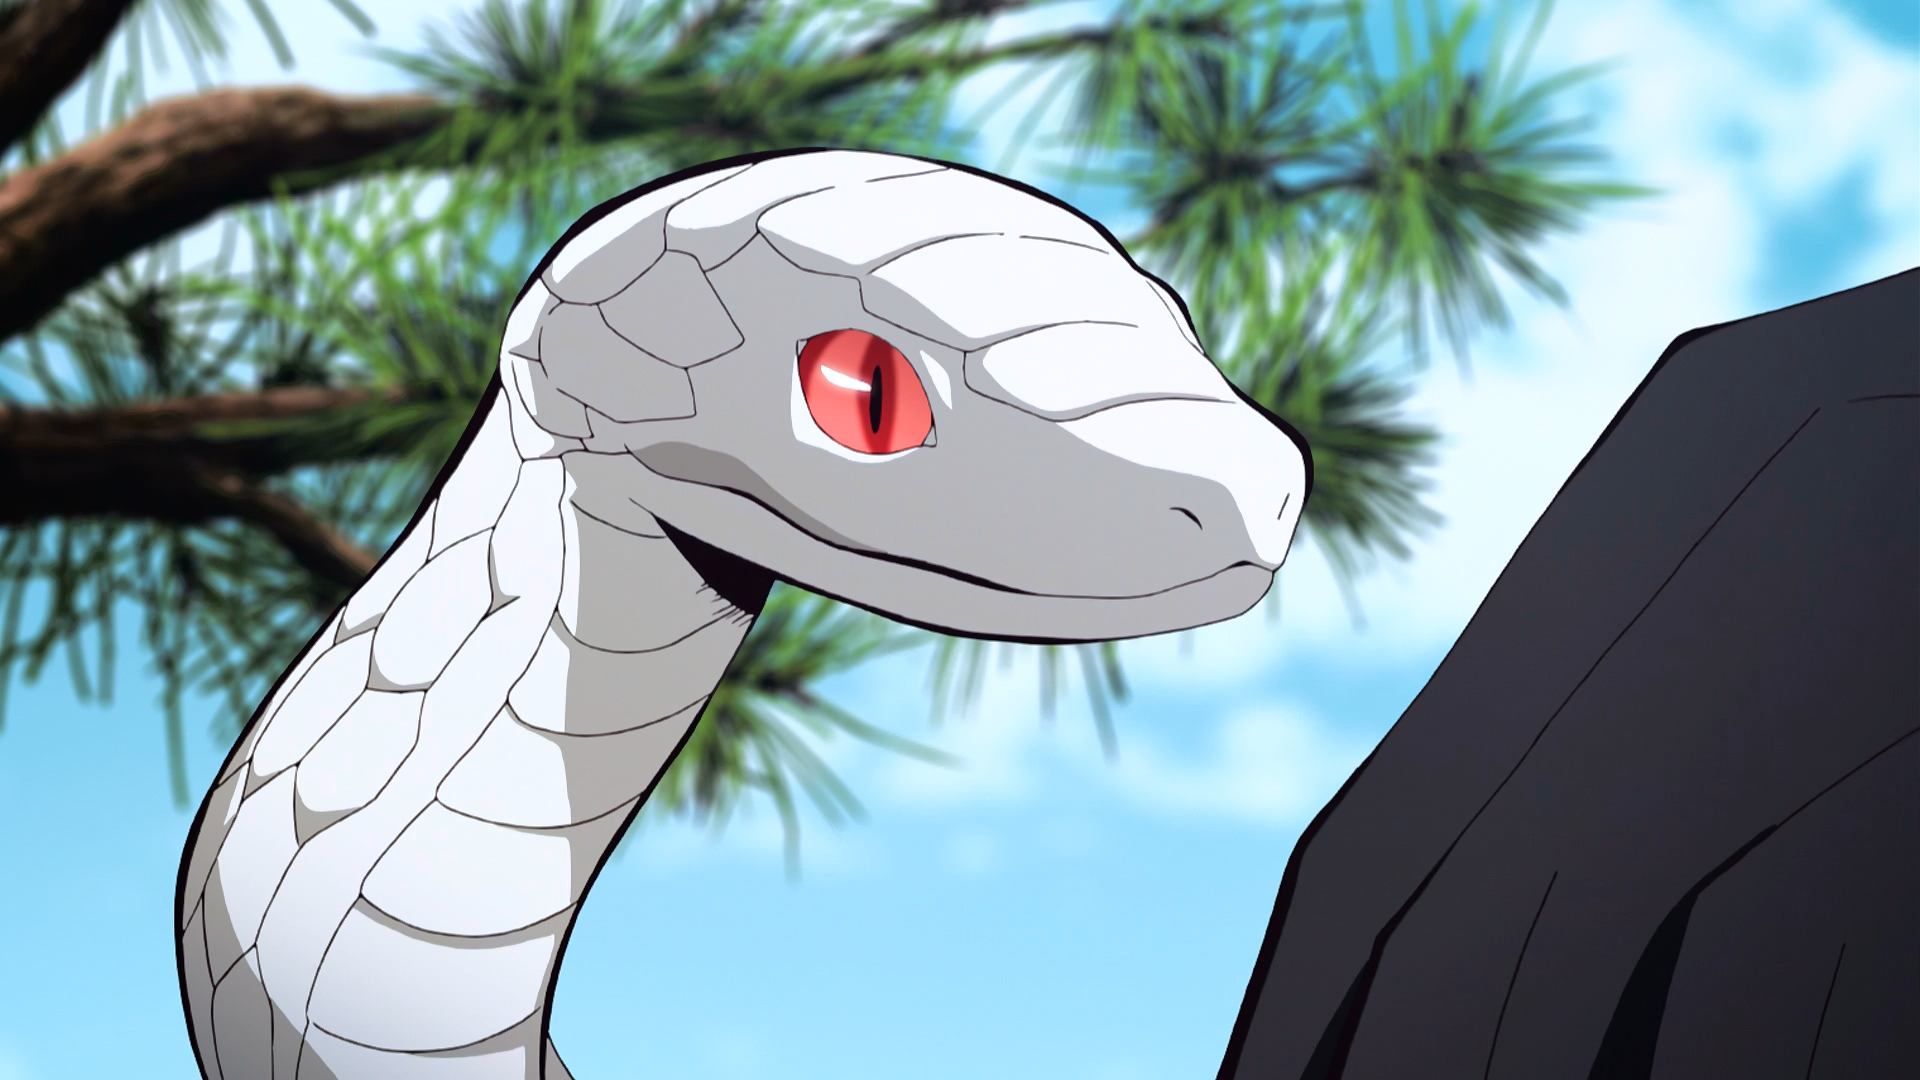 Serpent Demon, Kimetsu no Yaiba Wiki